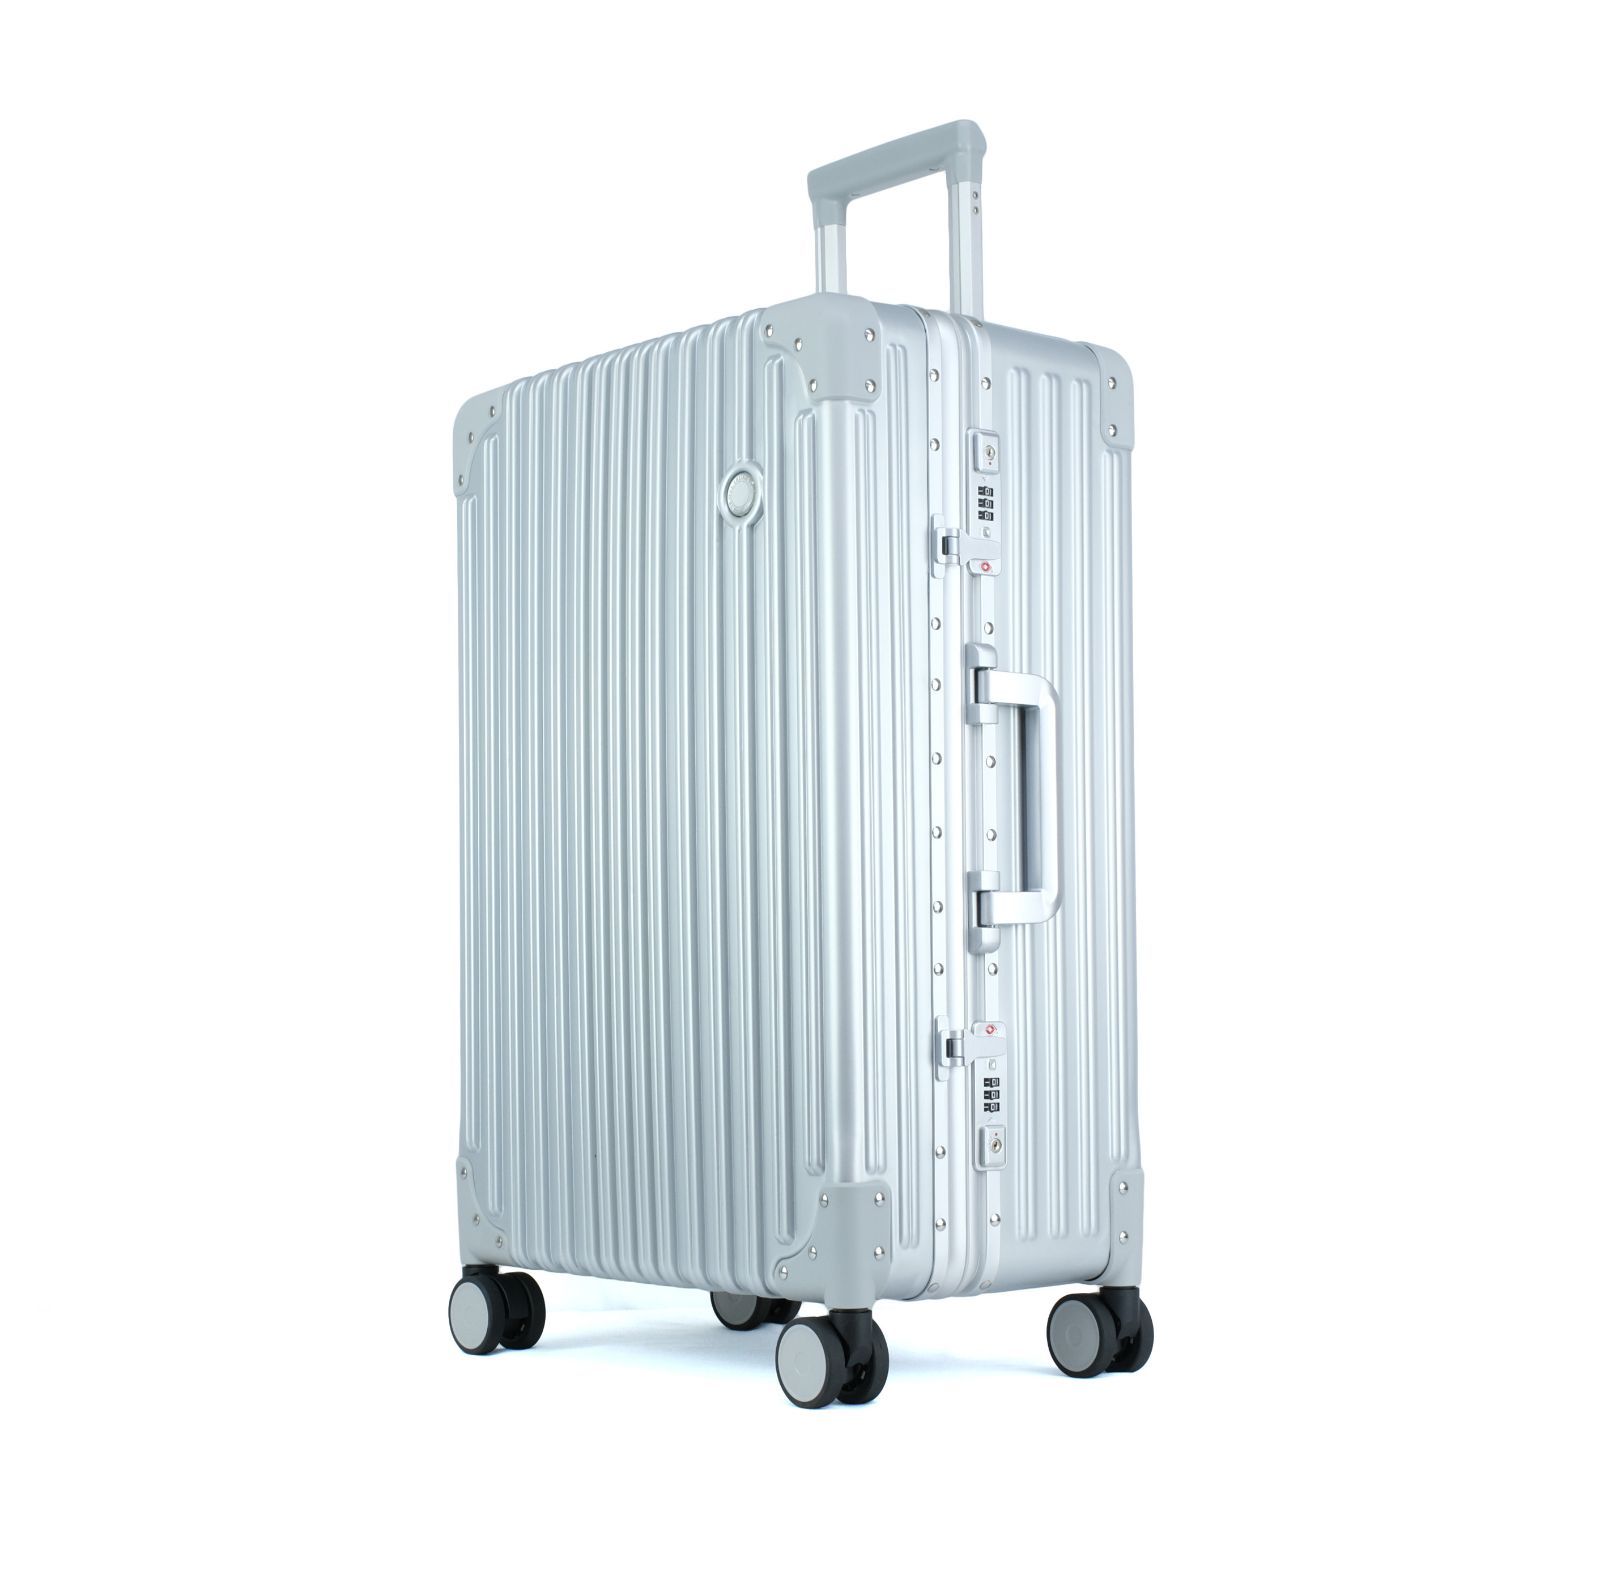 TRUNKTRAVEL] スーツケース キャリーバッグ Mサイズ シルバー アルミ